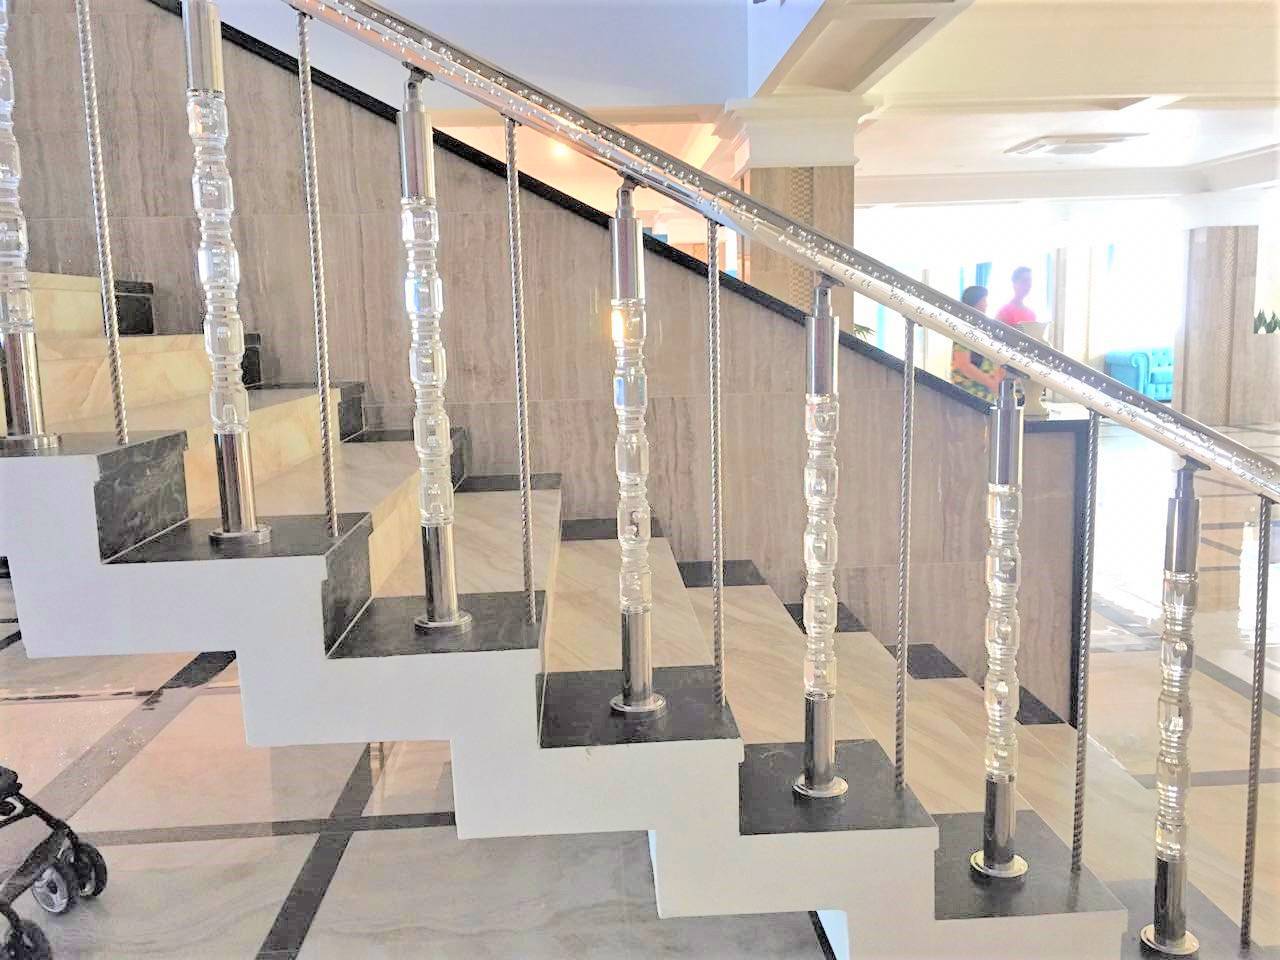 Виды стеклянных ограждений лестниц и способы их монтажа